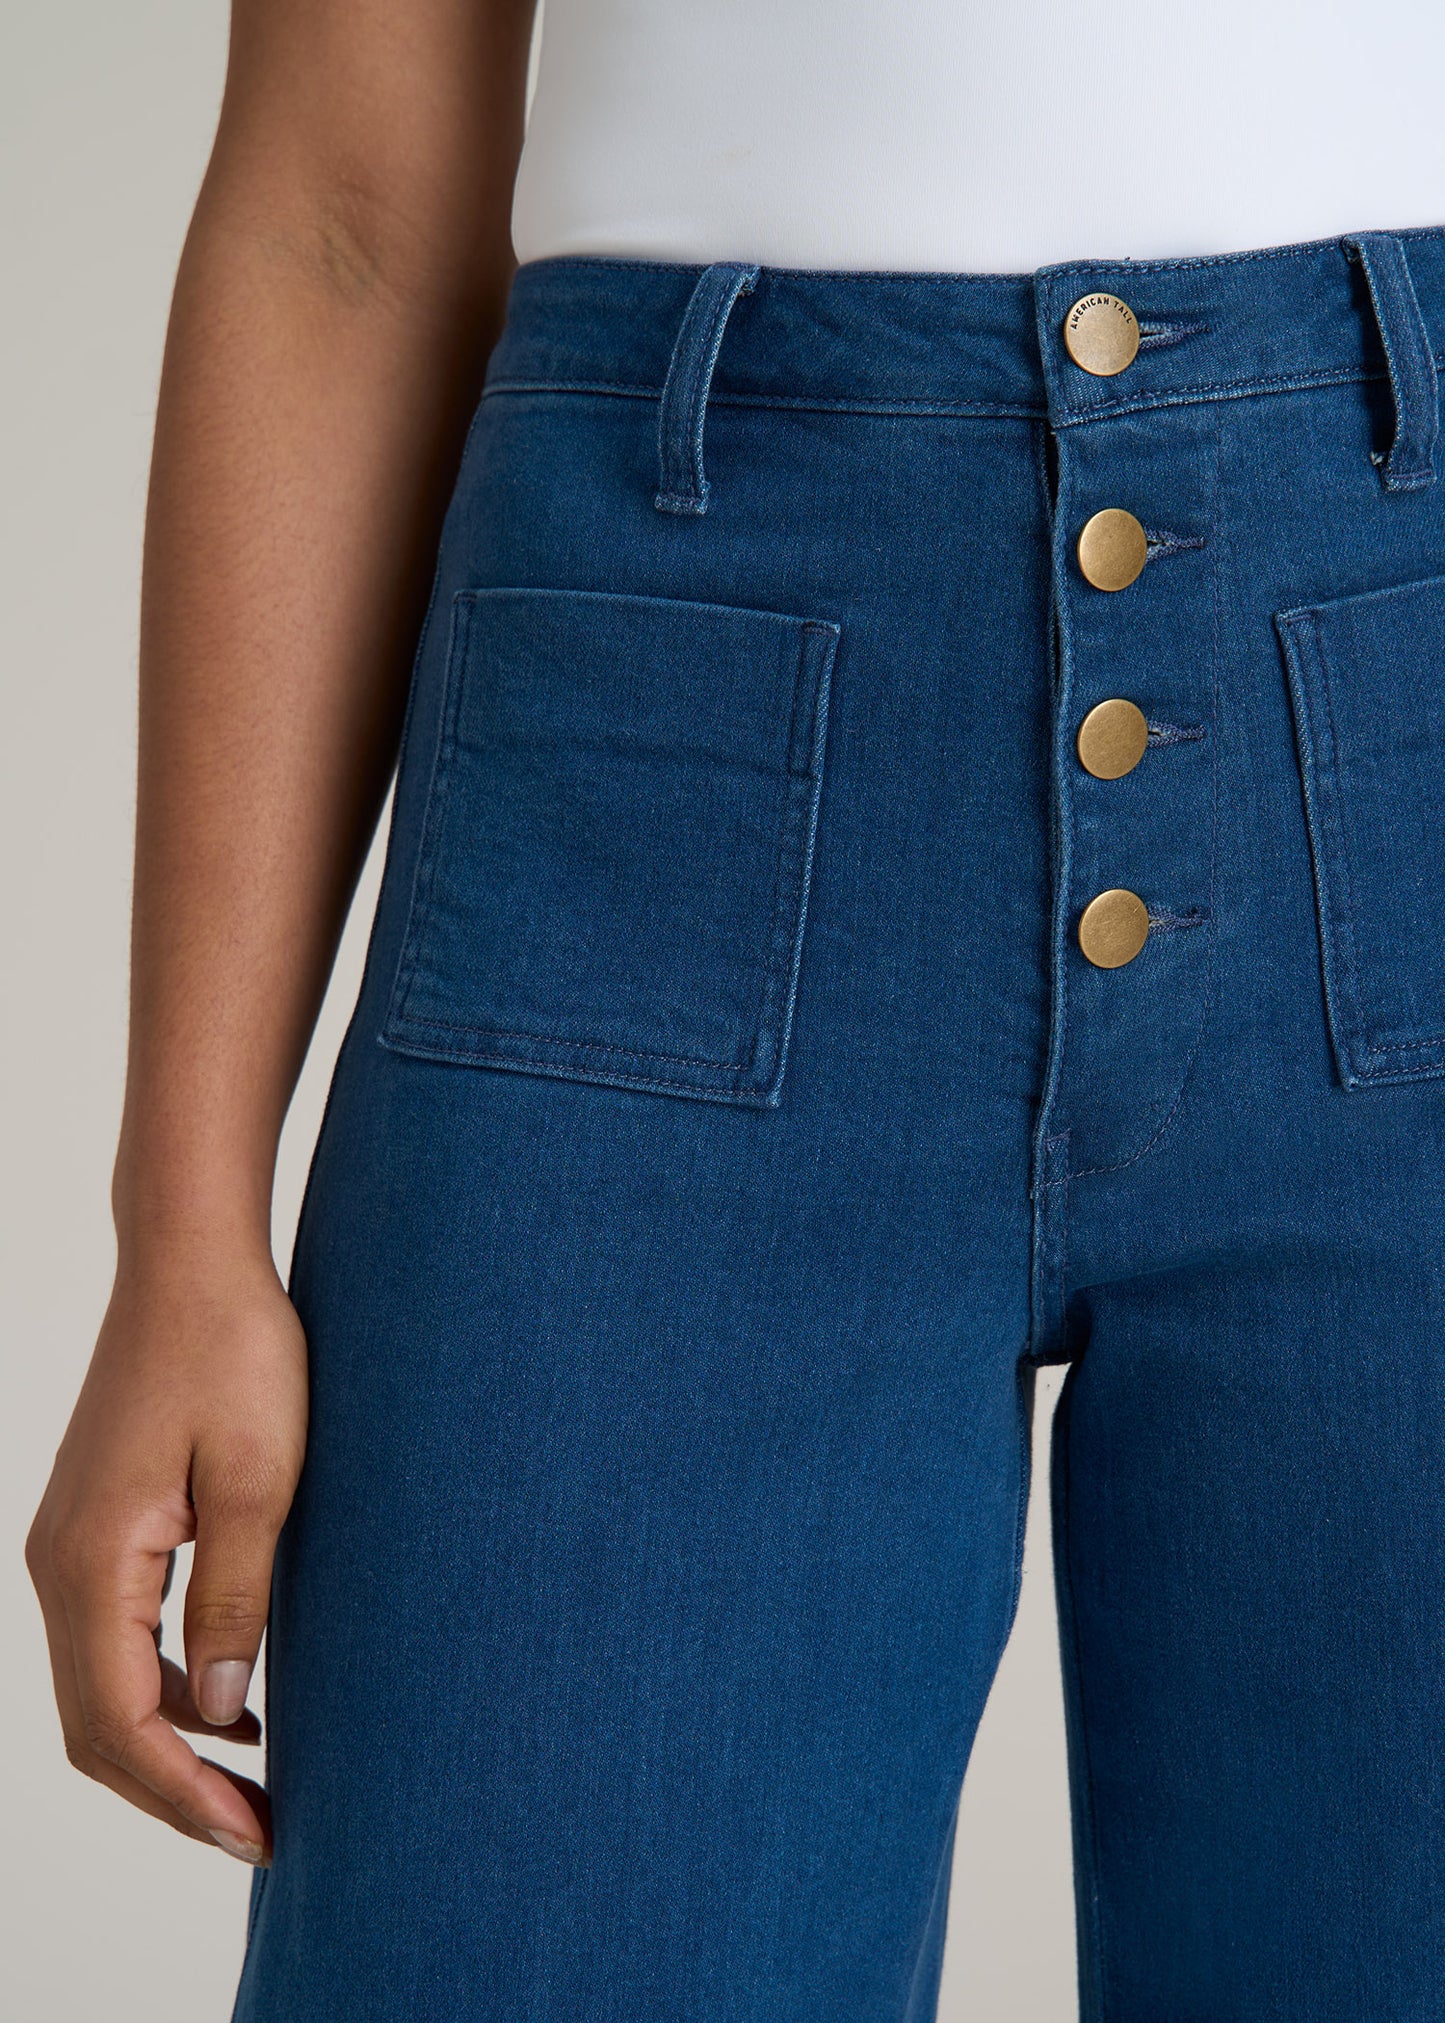 Stevie Wide Leg Patch Pocket Jean for Tall Women in 70's Blues